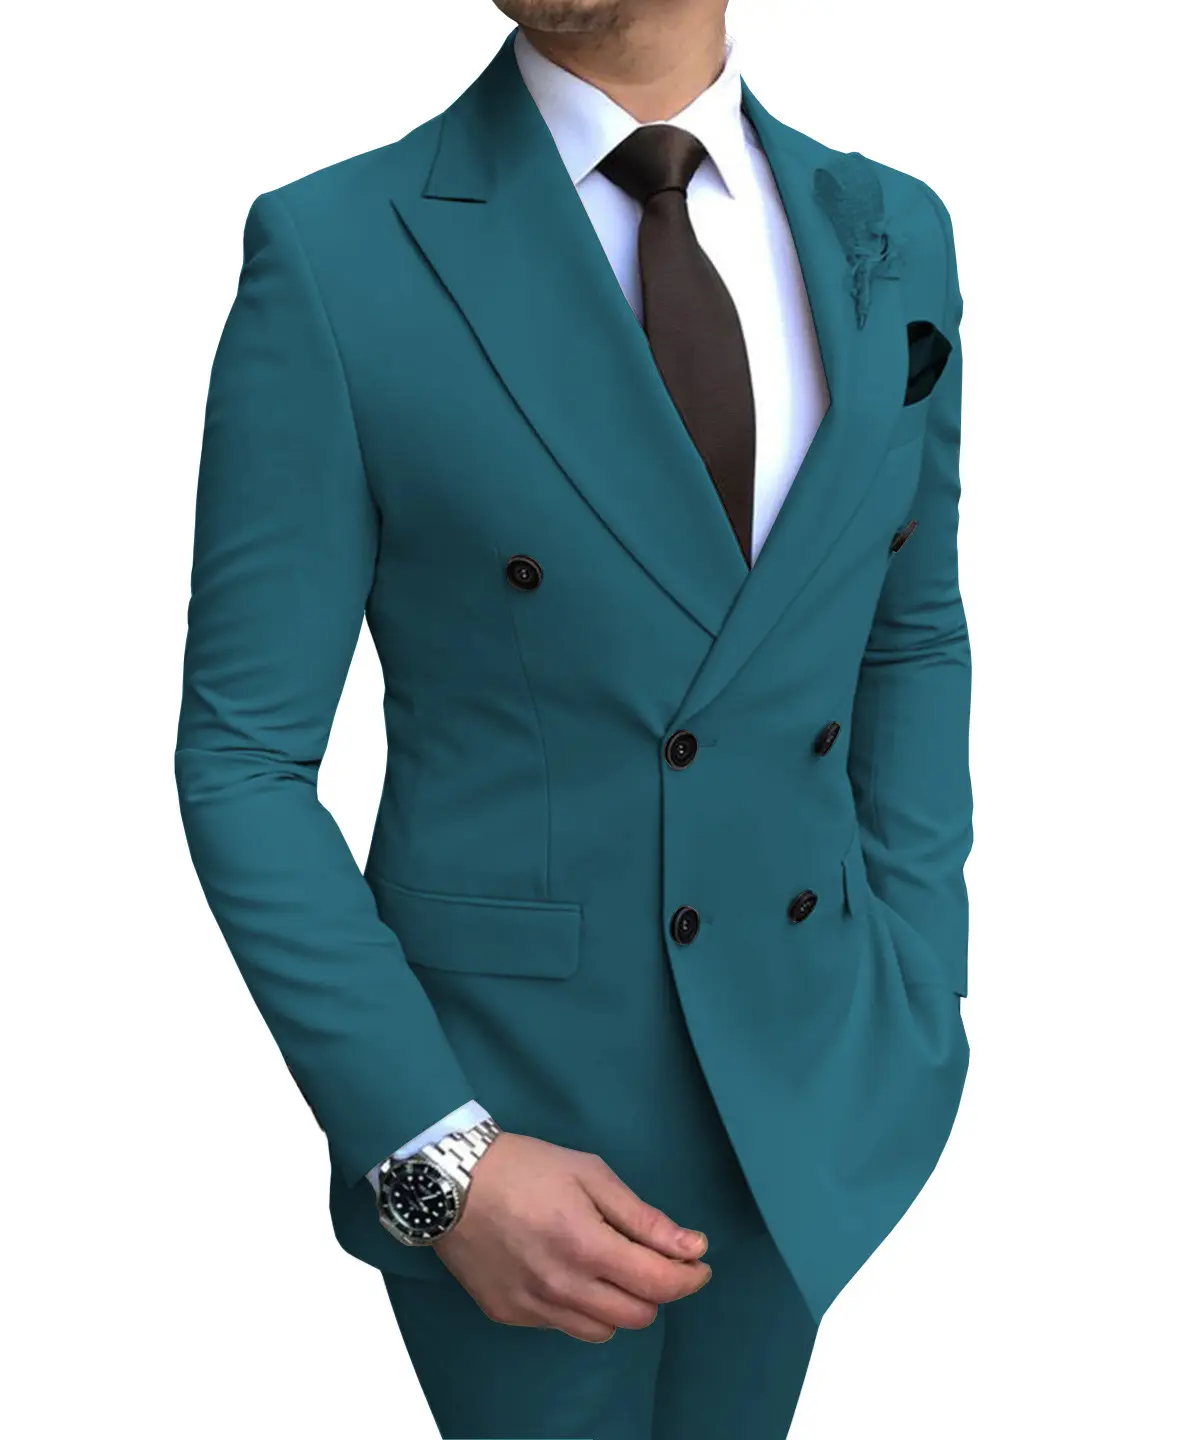 20 Men's Suit Jackets Wholesale Lot Make Money Must See 